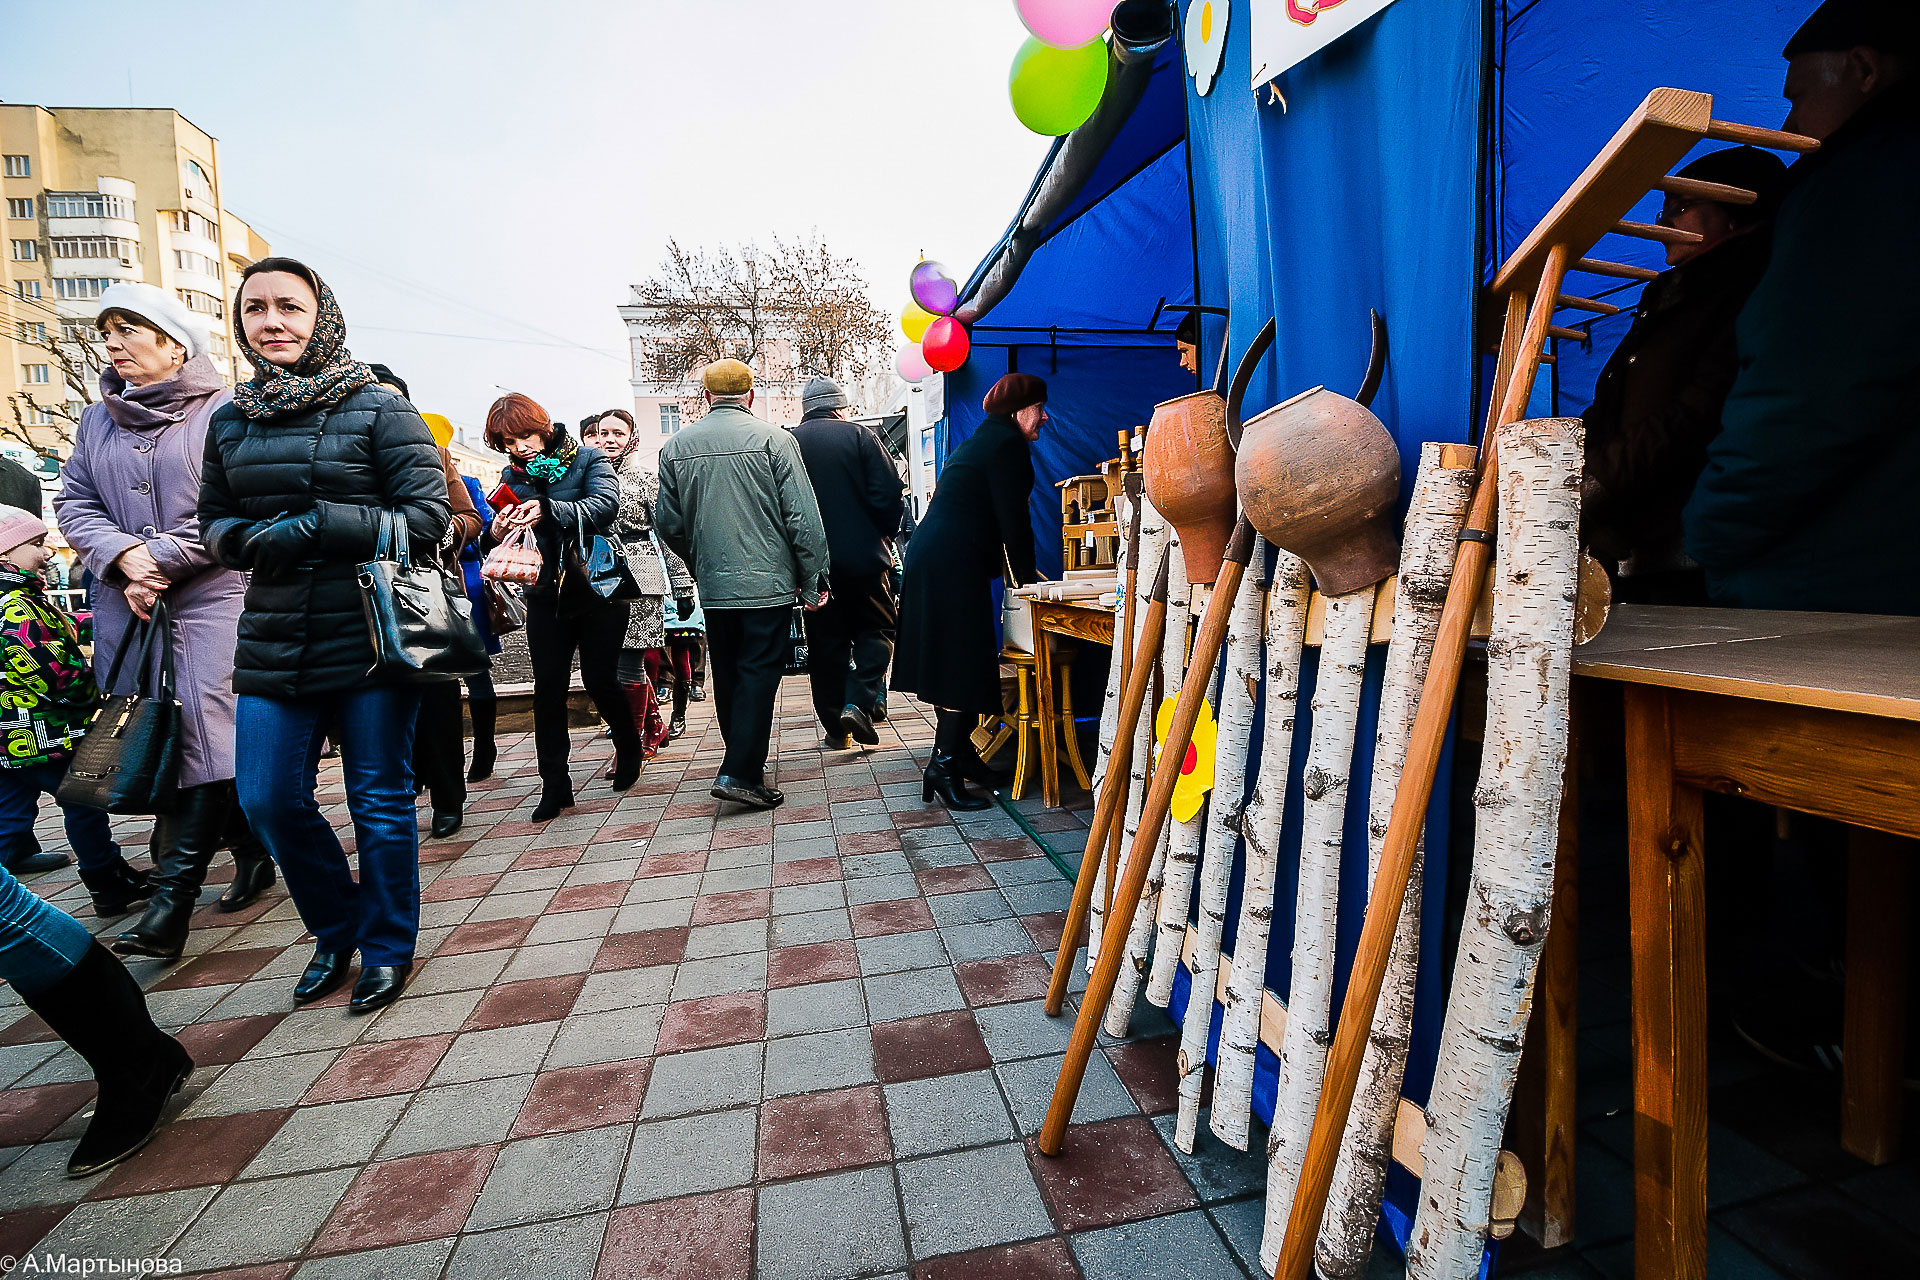 крымская весна митинг тамбов 2017